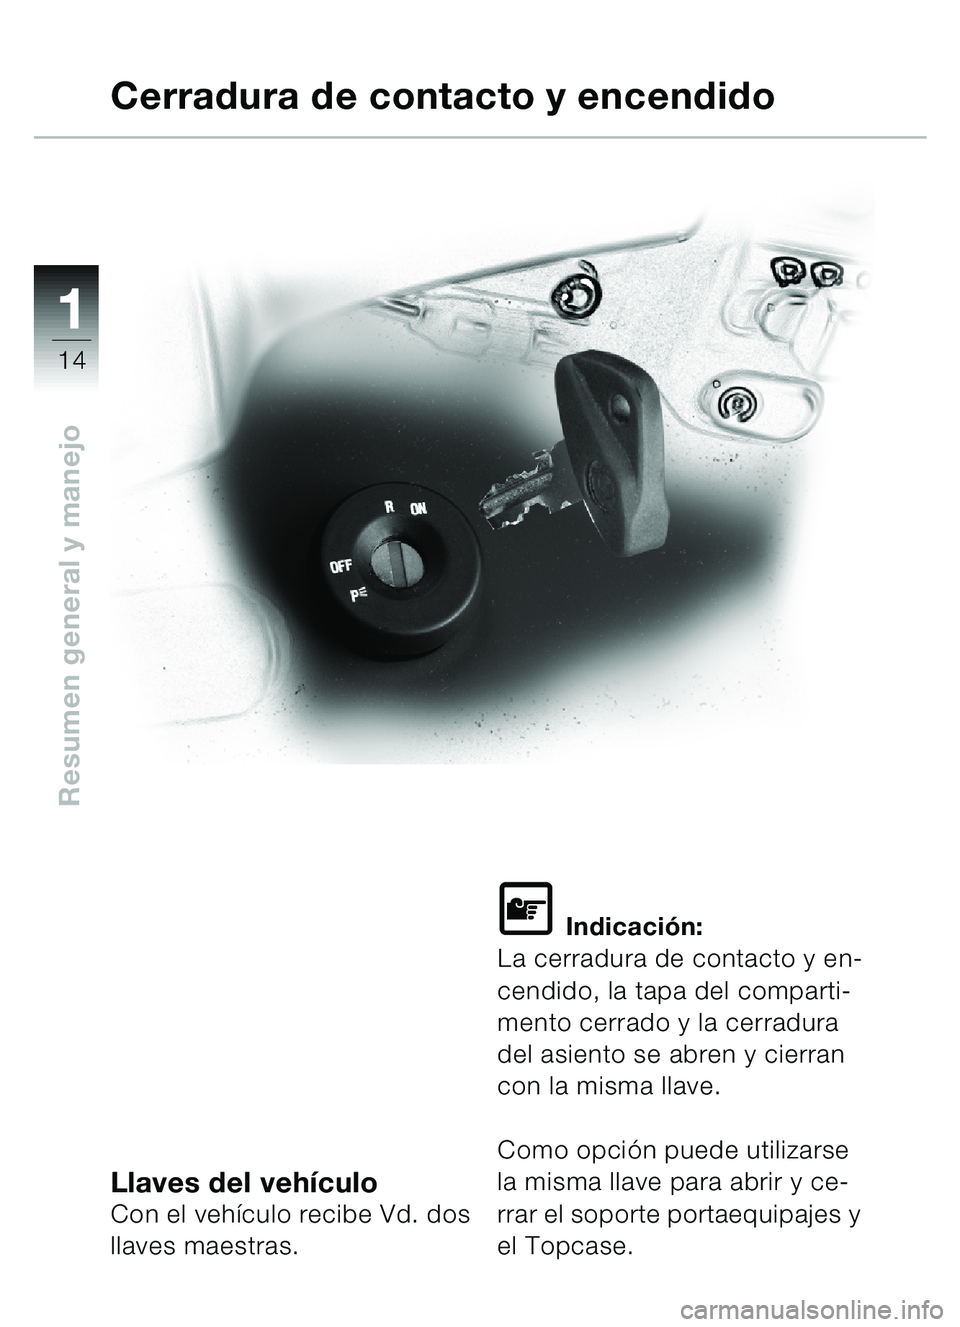 BMW MOTORRAD C1 2000  Manual de instrucciones (in Spanish) 11
14
Resumen general y manejo
Llaves del vehículoCon el veh ículo recibe Vd. dos 
llaves maestras.
\f Indicaci ón:
La cerradura de contacto y en-
cendido, la tapa del comparti-
mento cerrado y la 